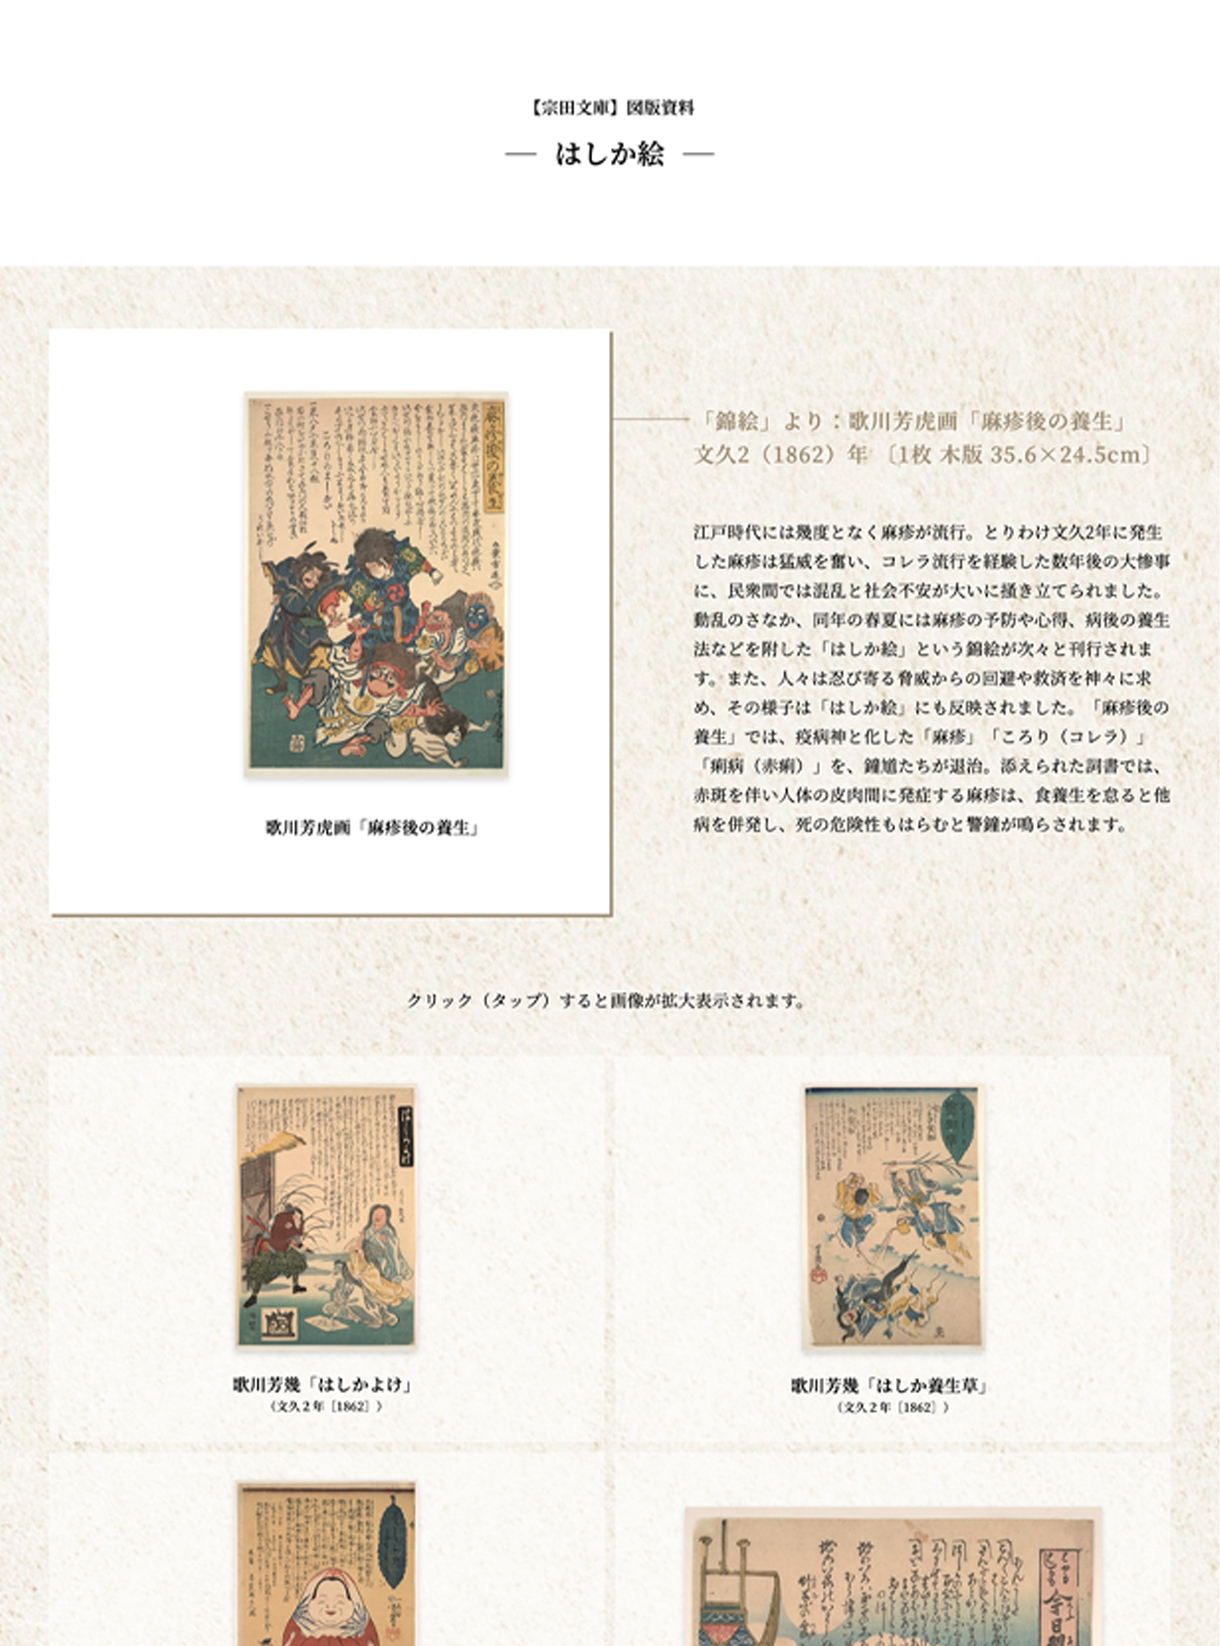 国際日本文化研究センターwebサイトの画像